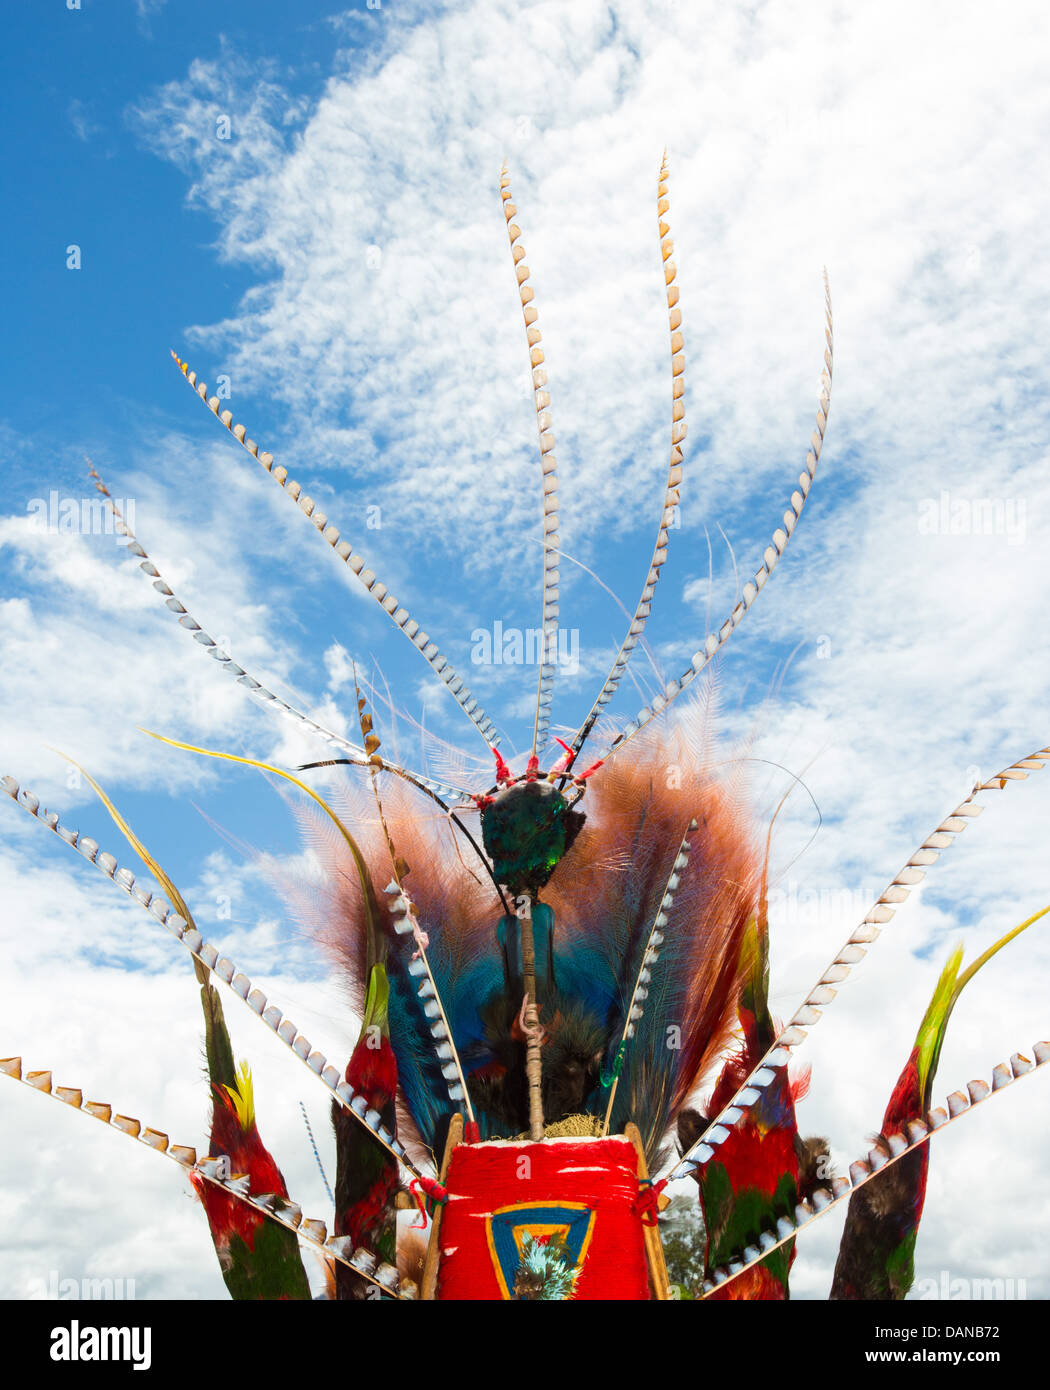 Coiffure de plumes magnifiques d'une tribu de Papouasie-Nouvelle-Guinée au Festival de Goroka, Papouasie Nouvelle Guinée Banque D'Images